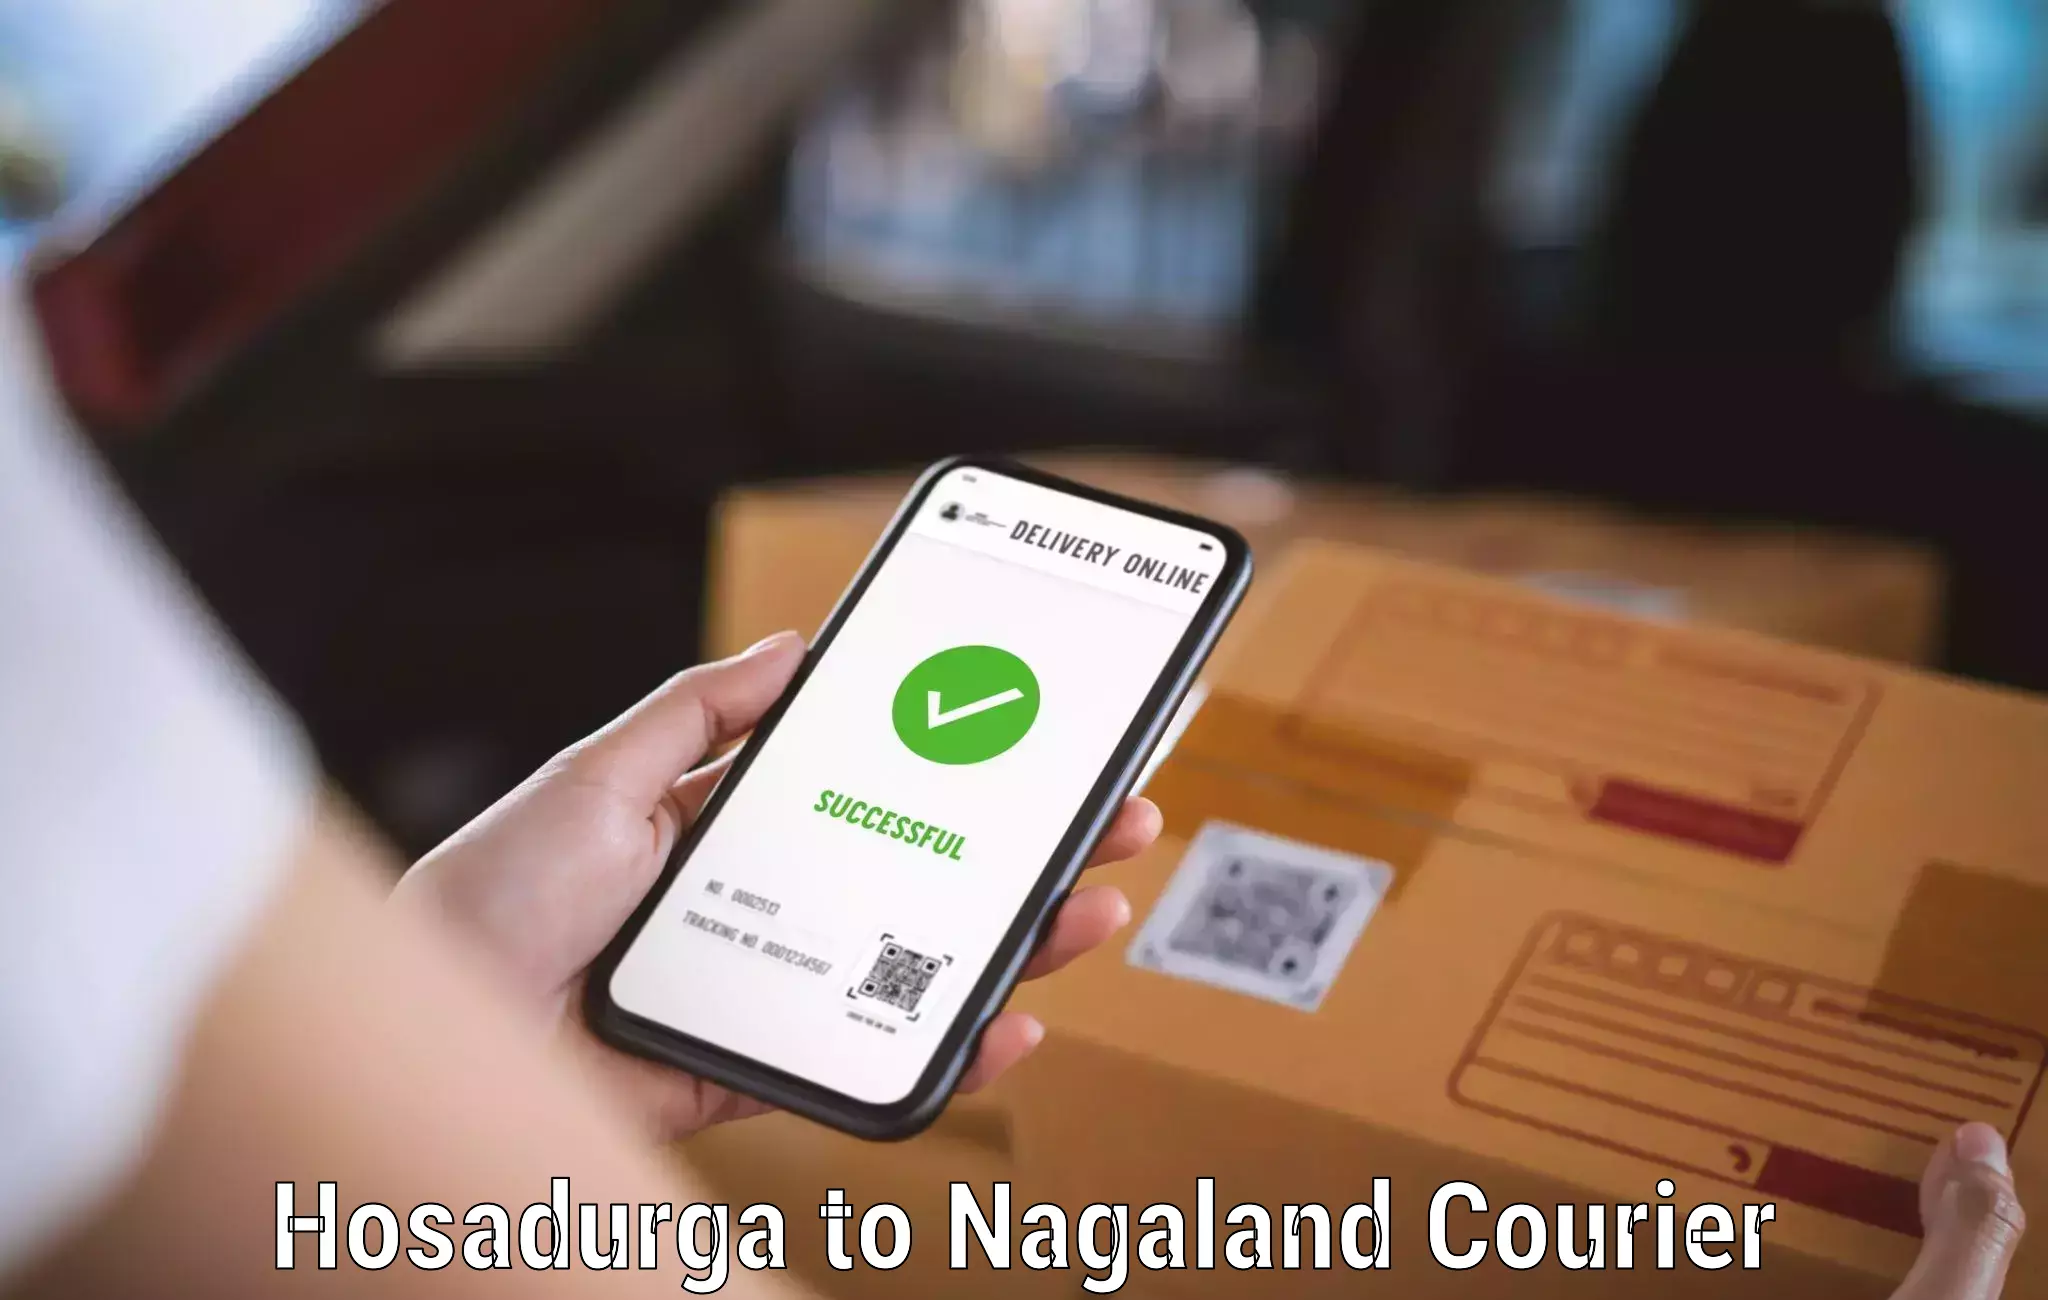 Quick booking process Hosadurga to Tuensang